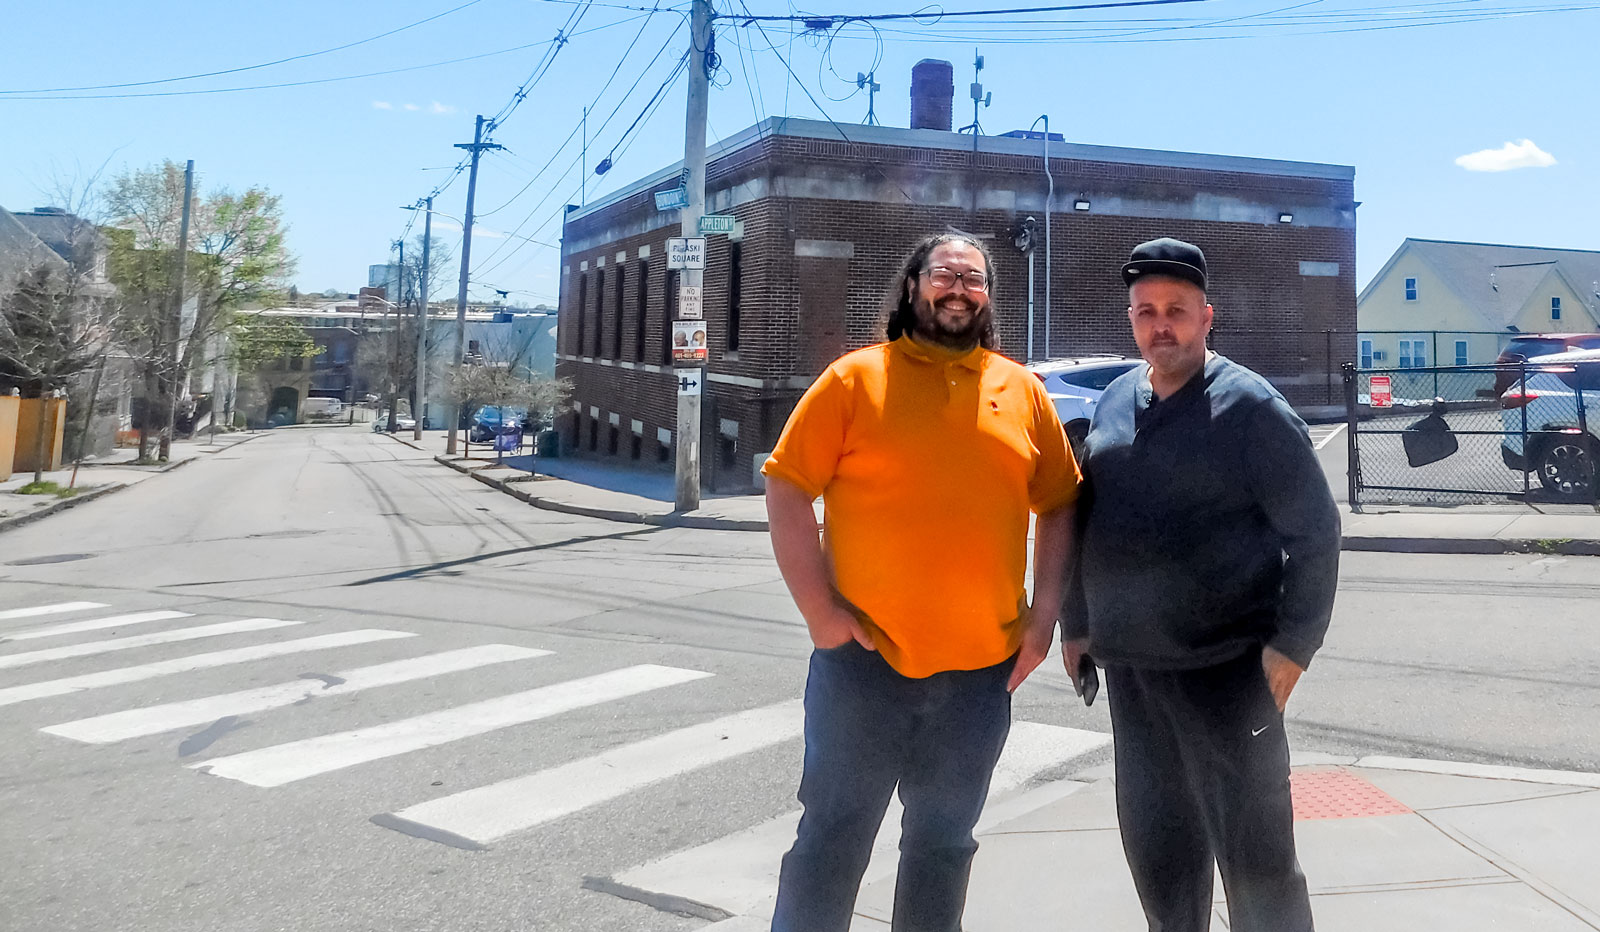 Antonio Rodriguez, ONE|NB's Assistant Director of Asset Management, à esquerda, e Harry Quiñones, de Providence, estão no exterior de ONE Neighborhood Builders' escritório na Chaffee Street, onde um dos transmissores do ONE|NB Connects WiFi está localizado.